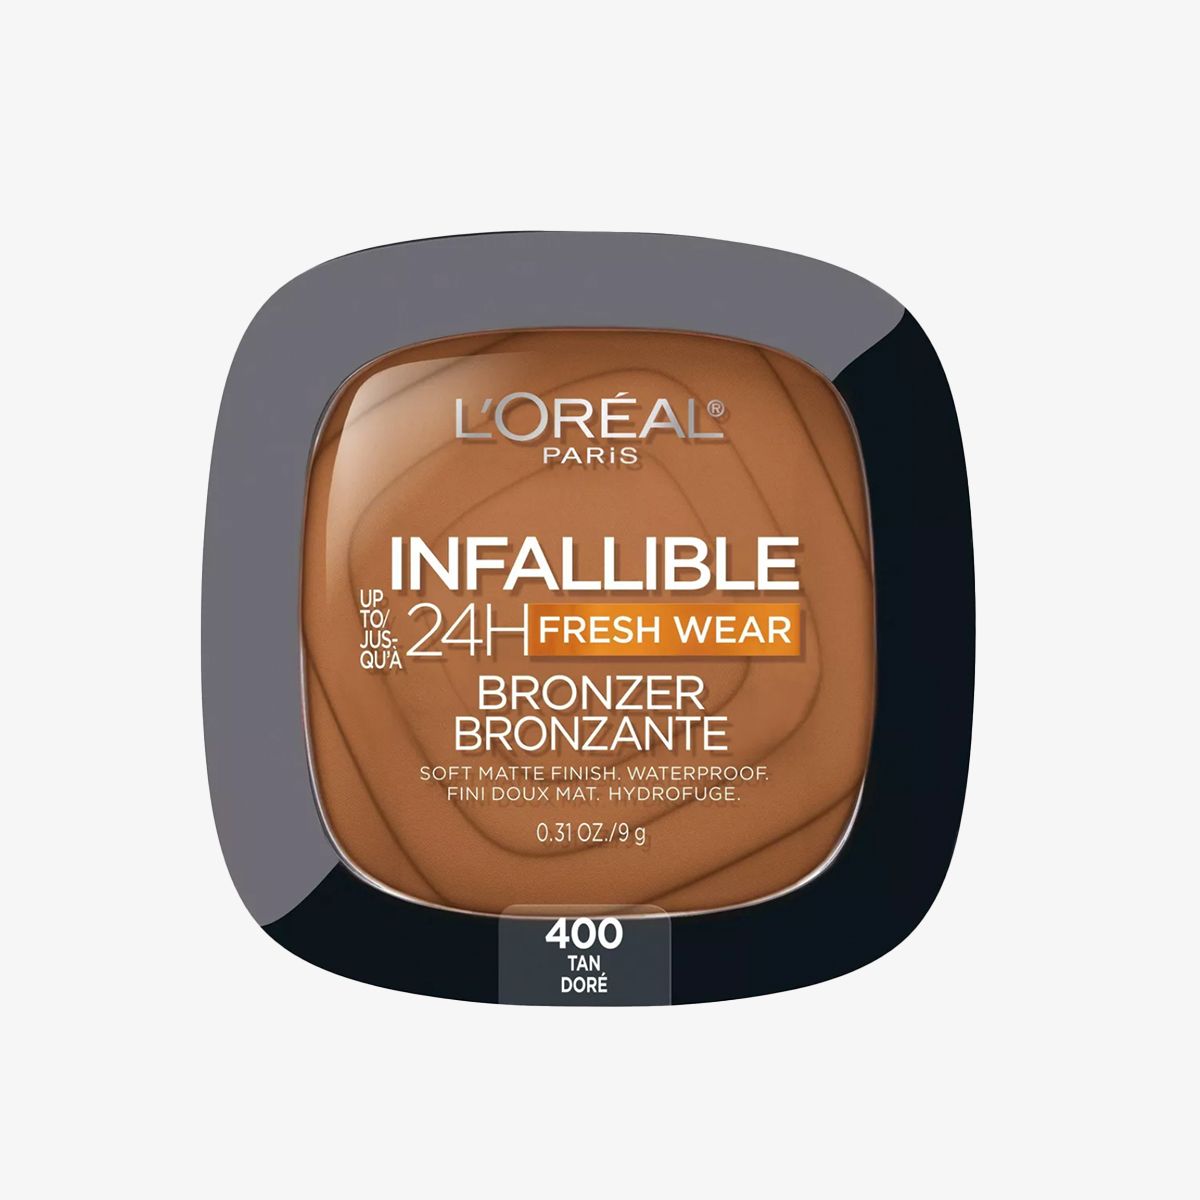 L'Oréal Paris Infallible Up to 24H Fresh Wear Soft Matte Bronzer